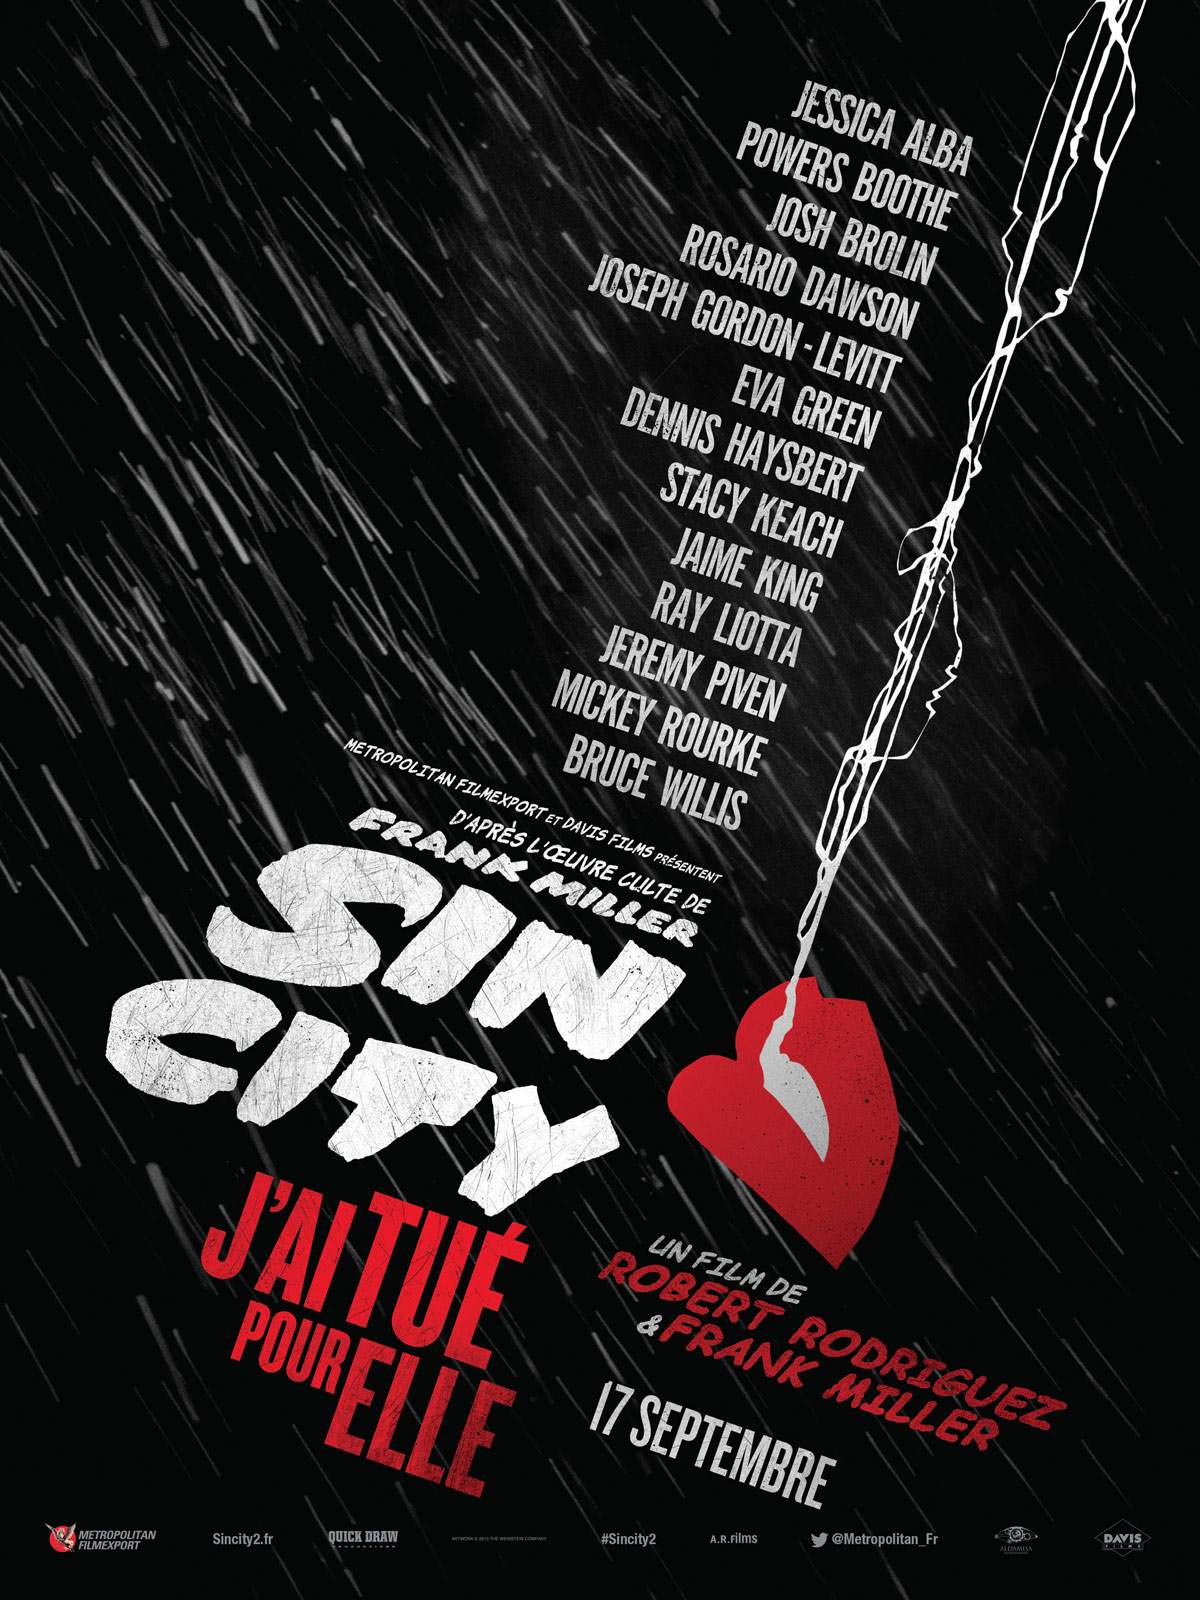 Bande annonce : Sin City – J’ai tué pour elle